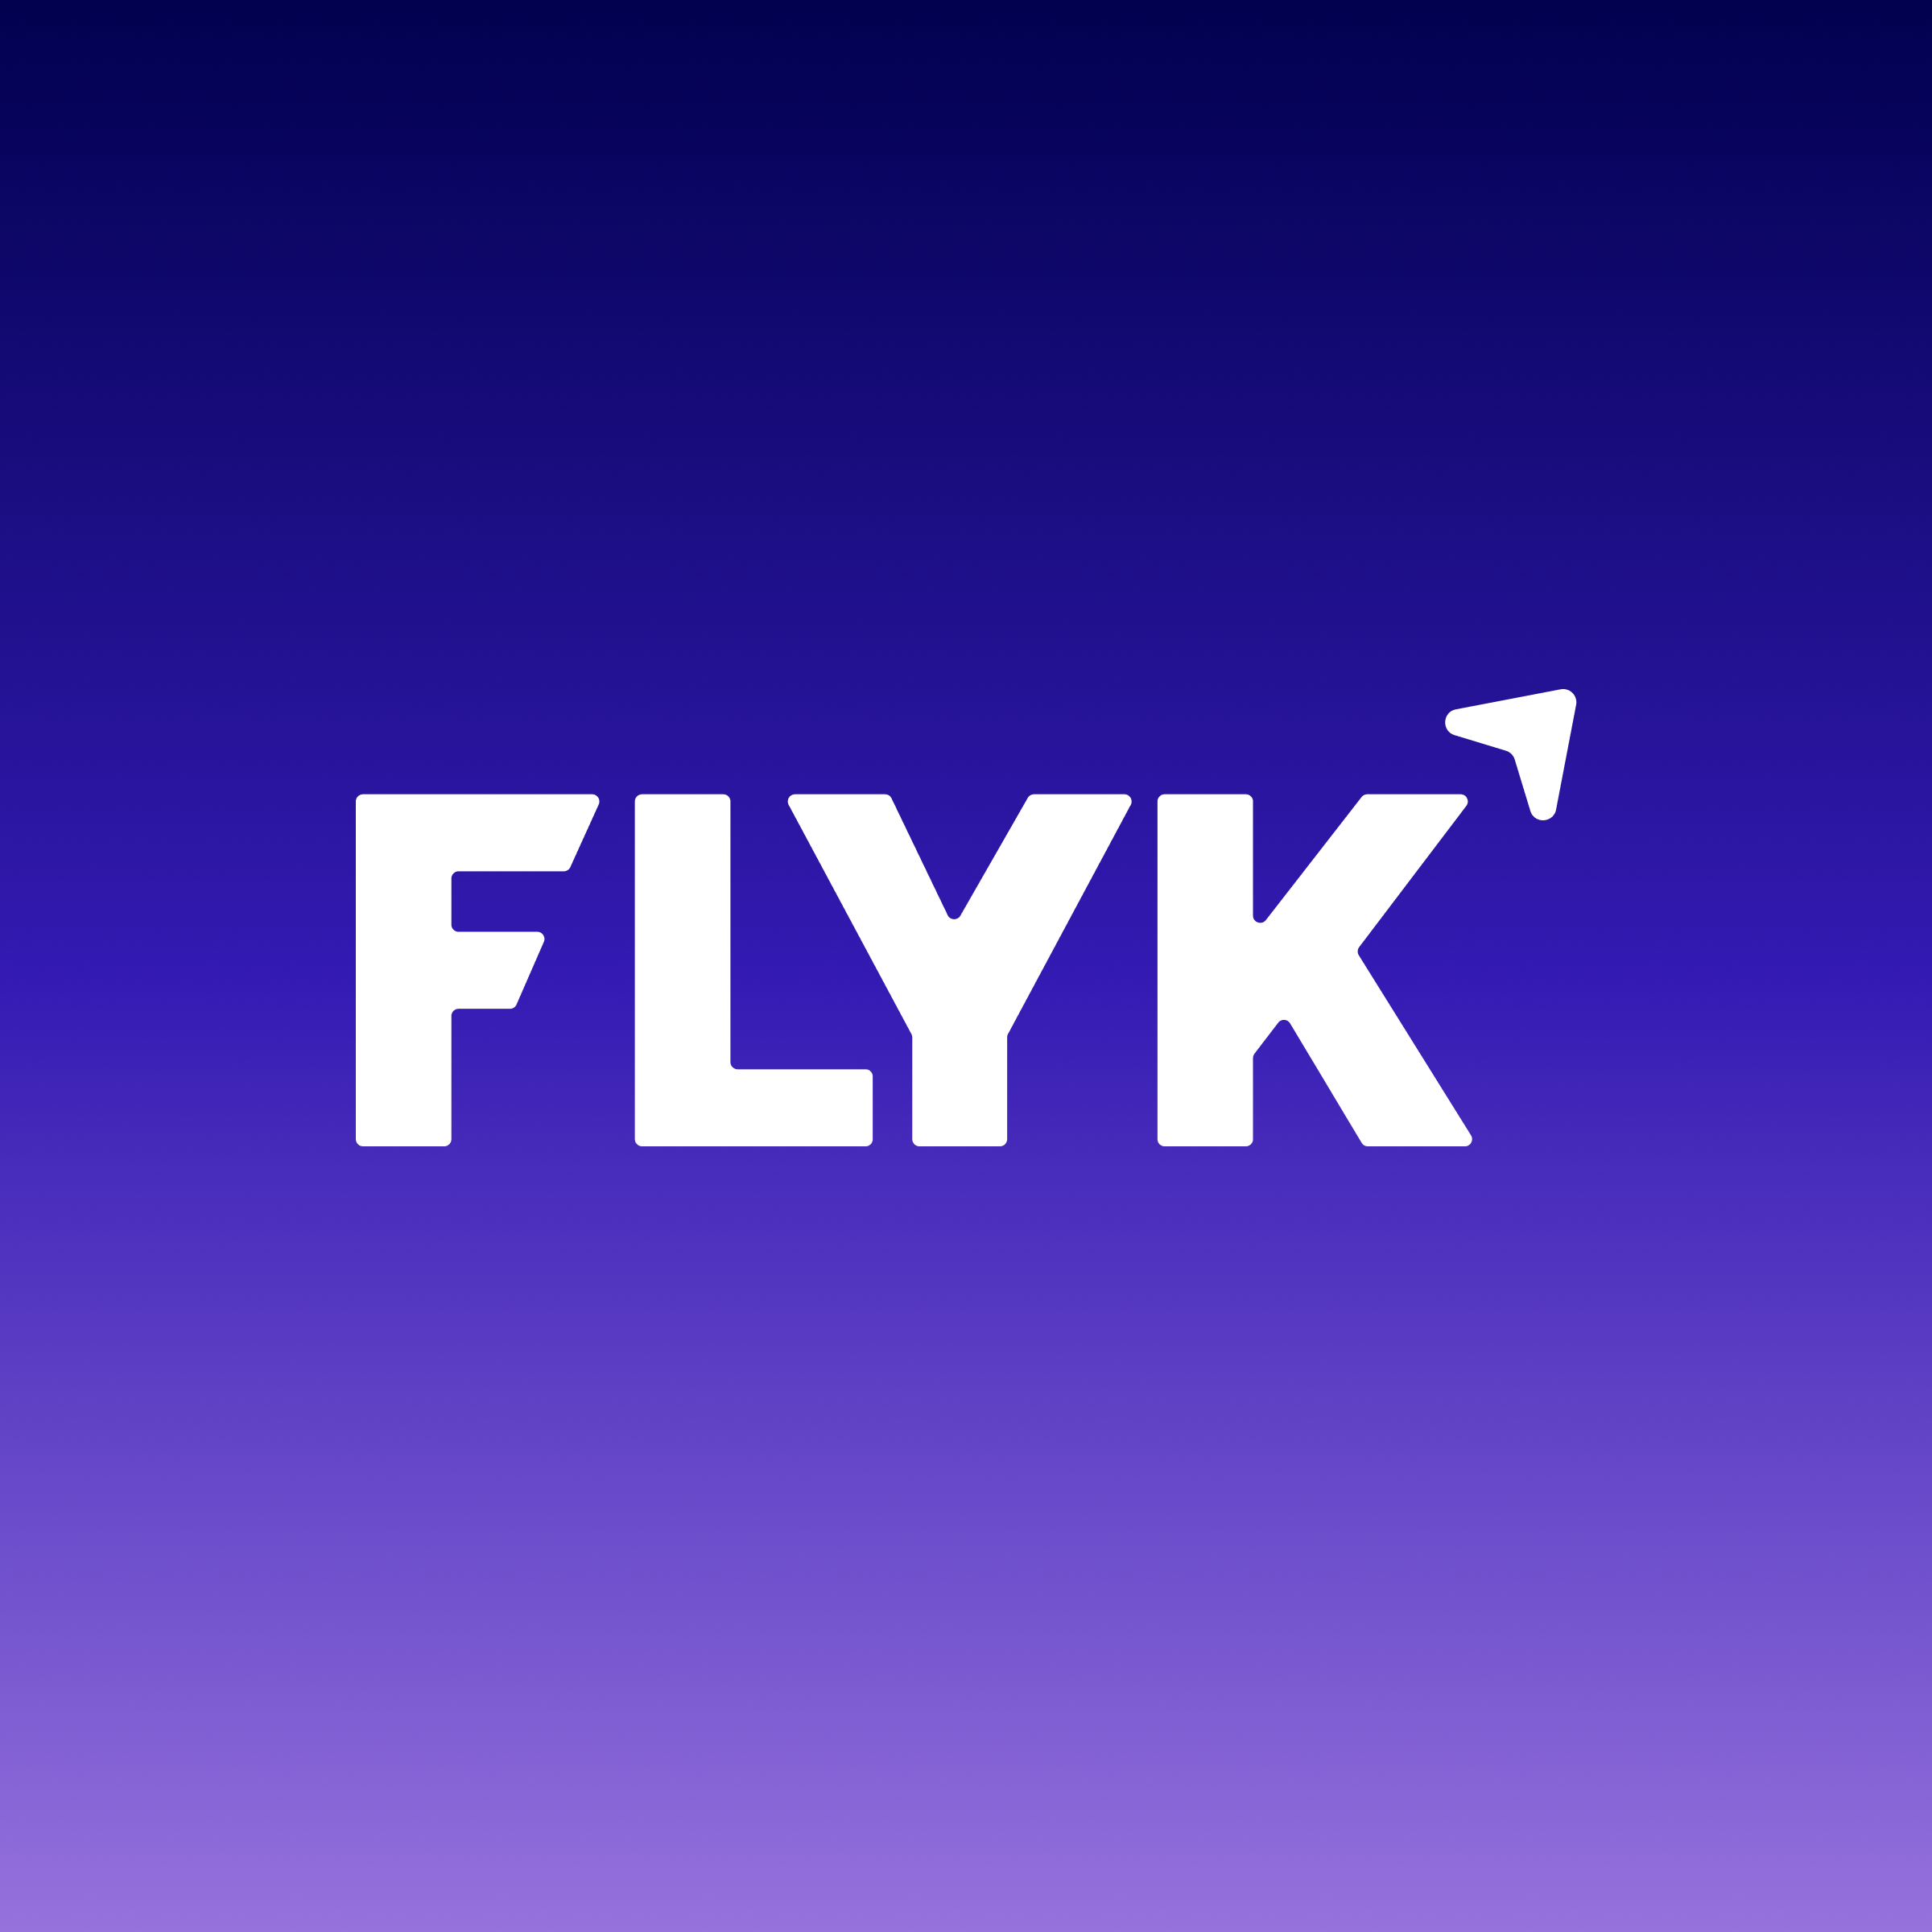 flyk.com